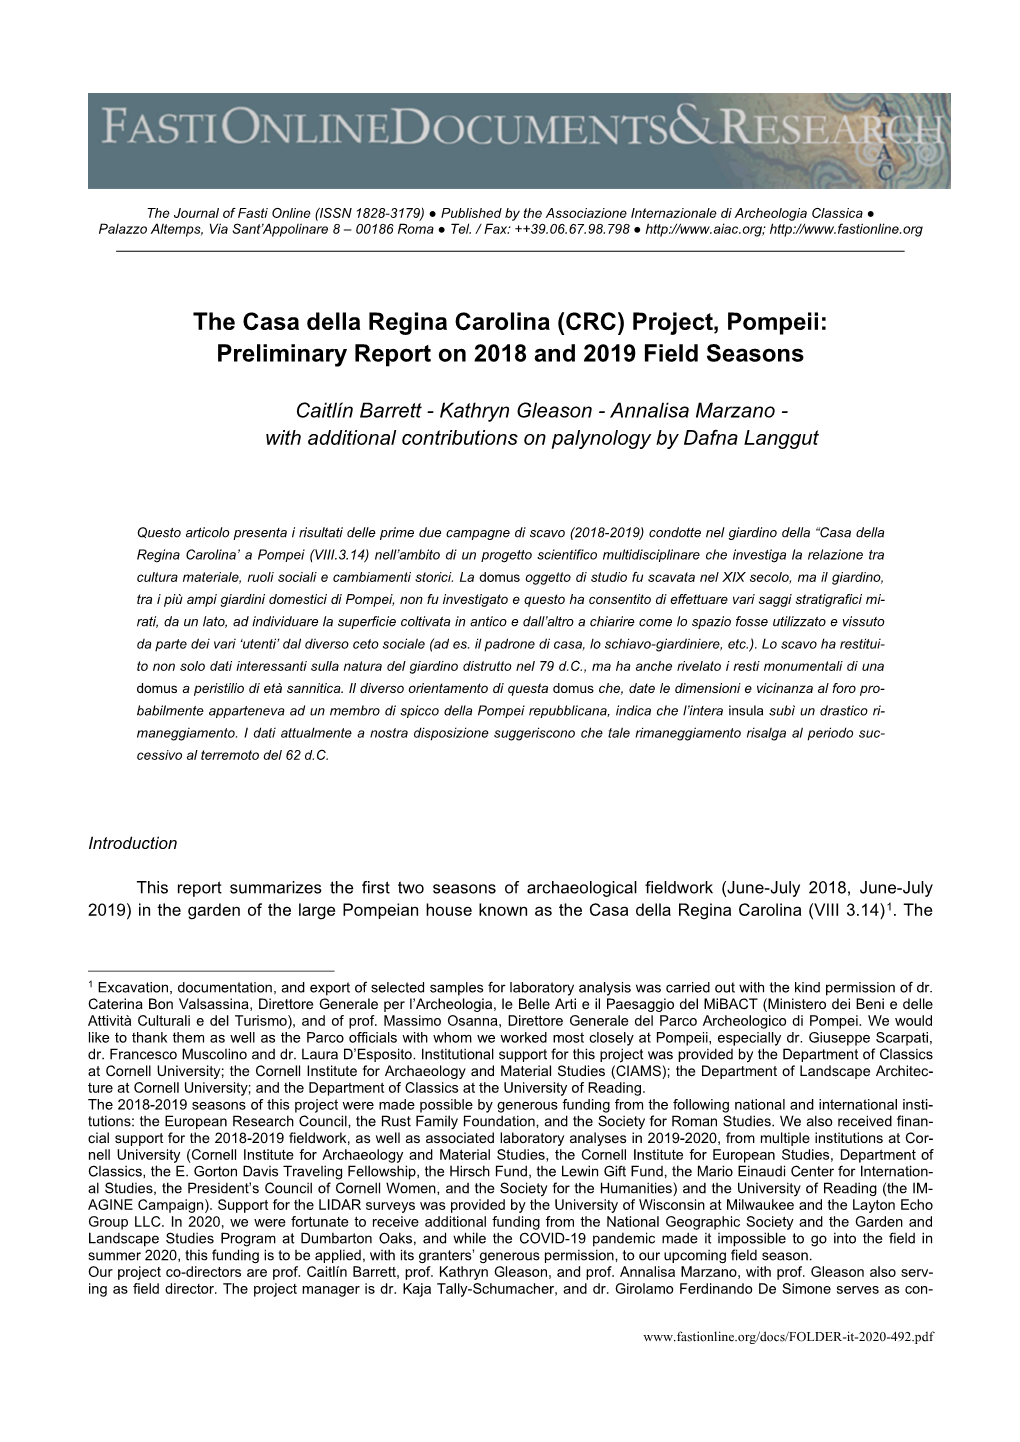 The Casa Della Regina Carolina (CRC) Project, Pompeii: Preliminary Report on 2018 and 2019 Field Seasons